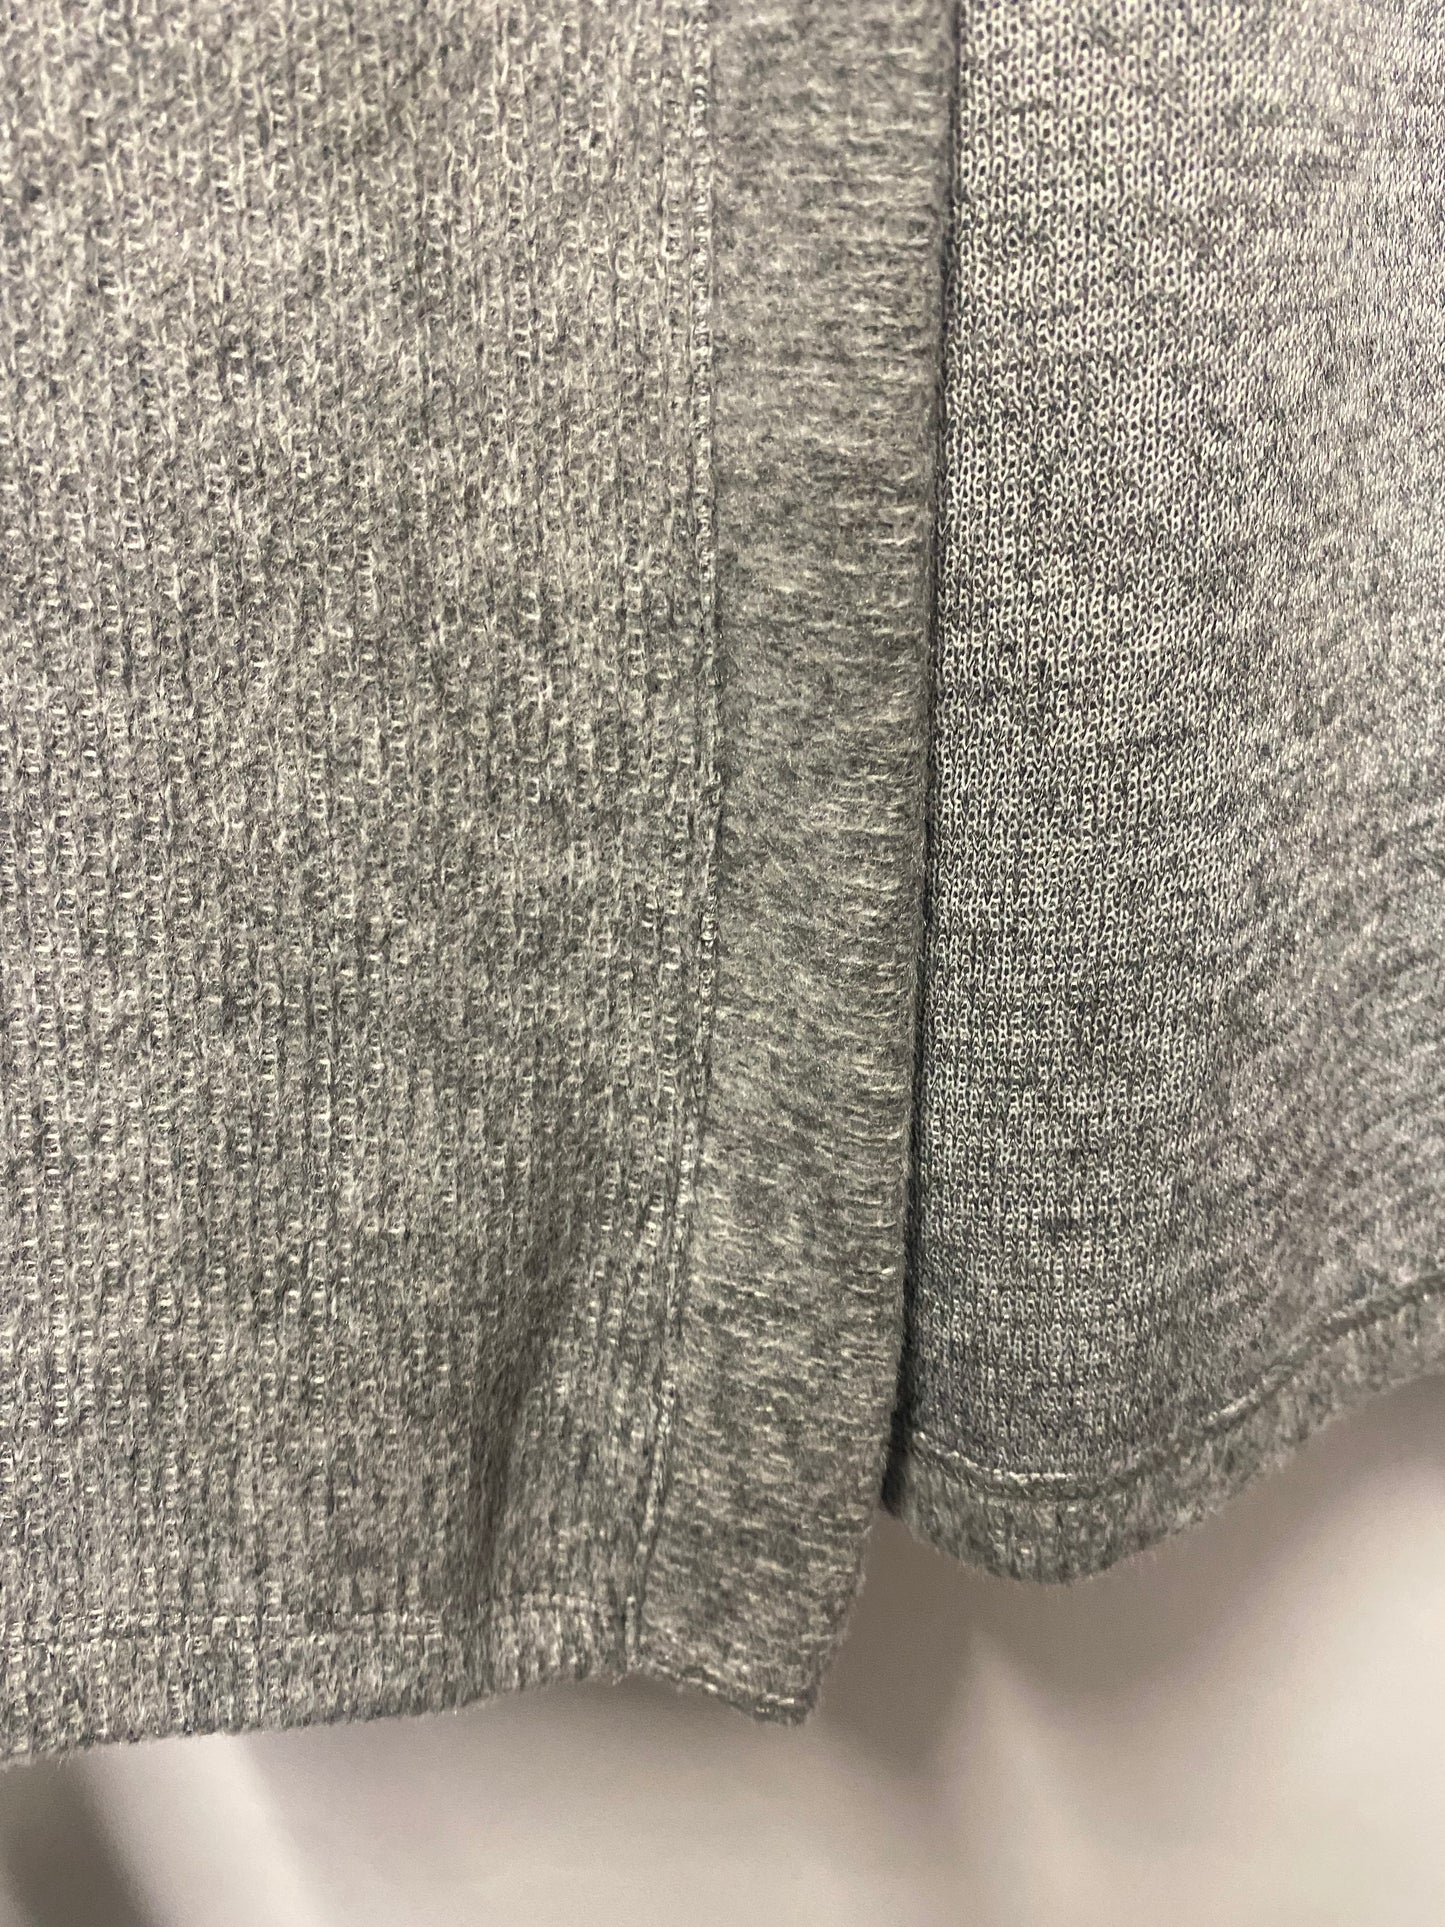 Vero Moda Grey Cardigan Medium BNWT